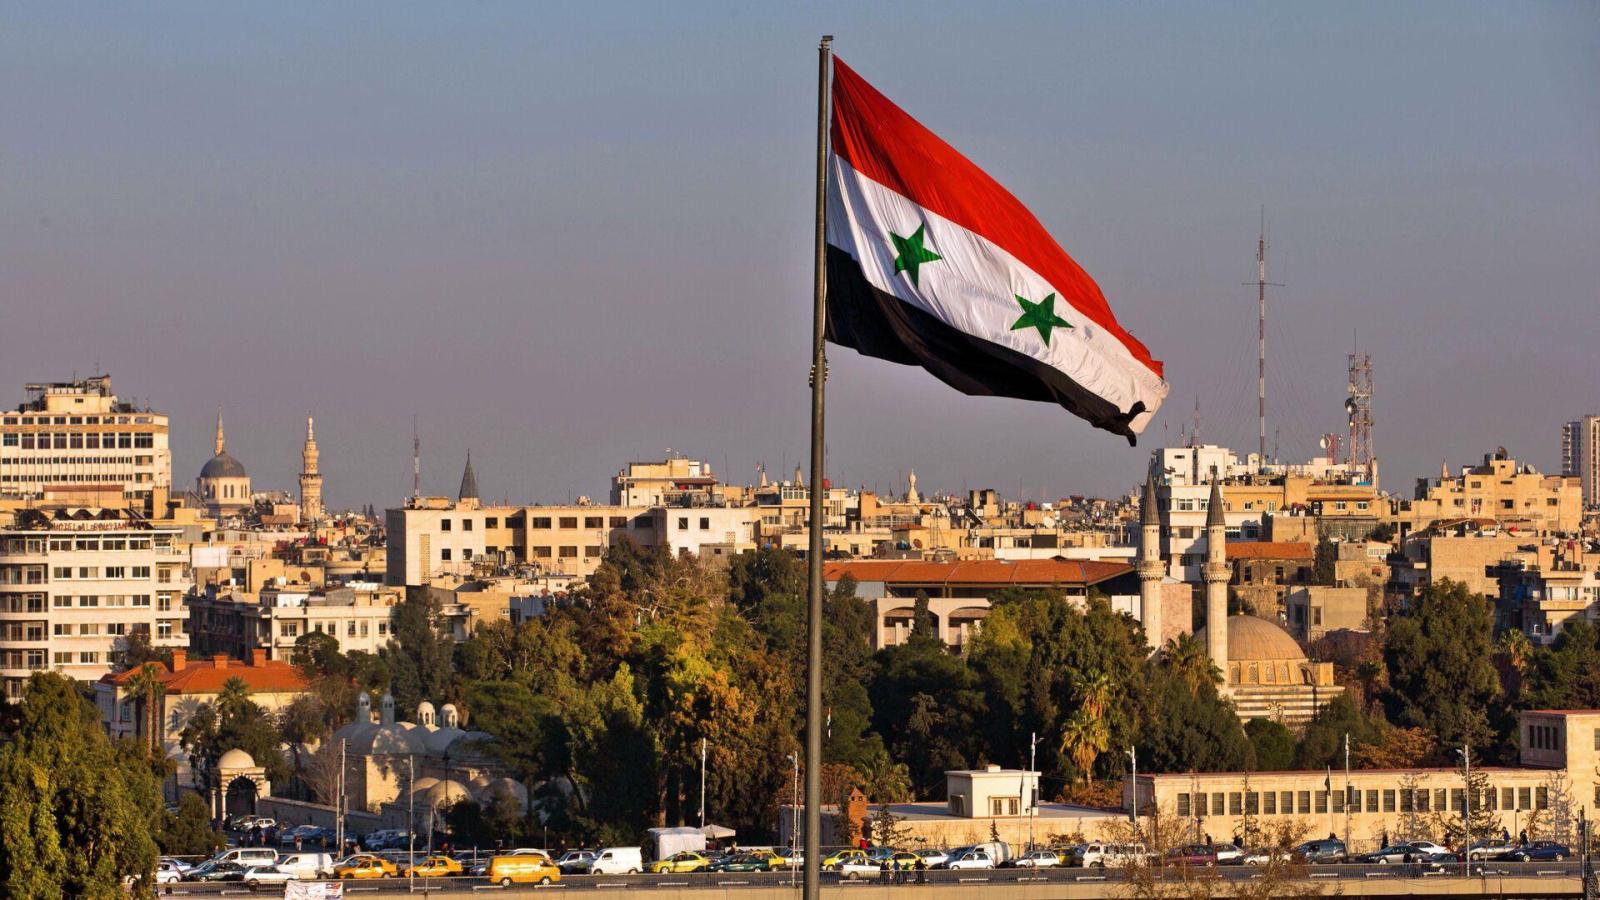 Сирия признала независимость ДНР и ЛНР